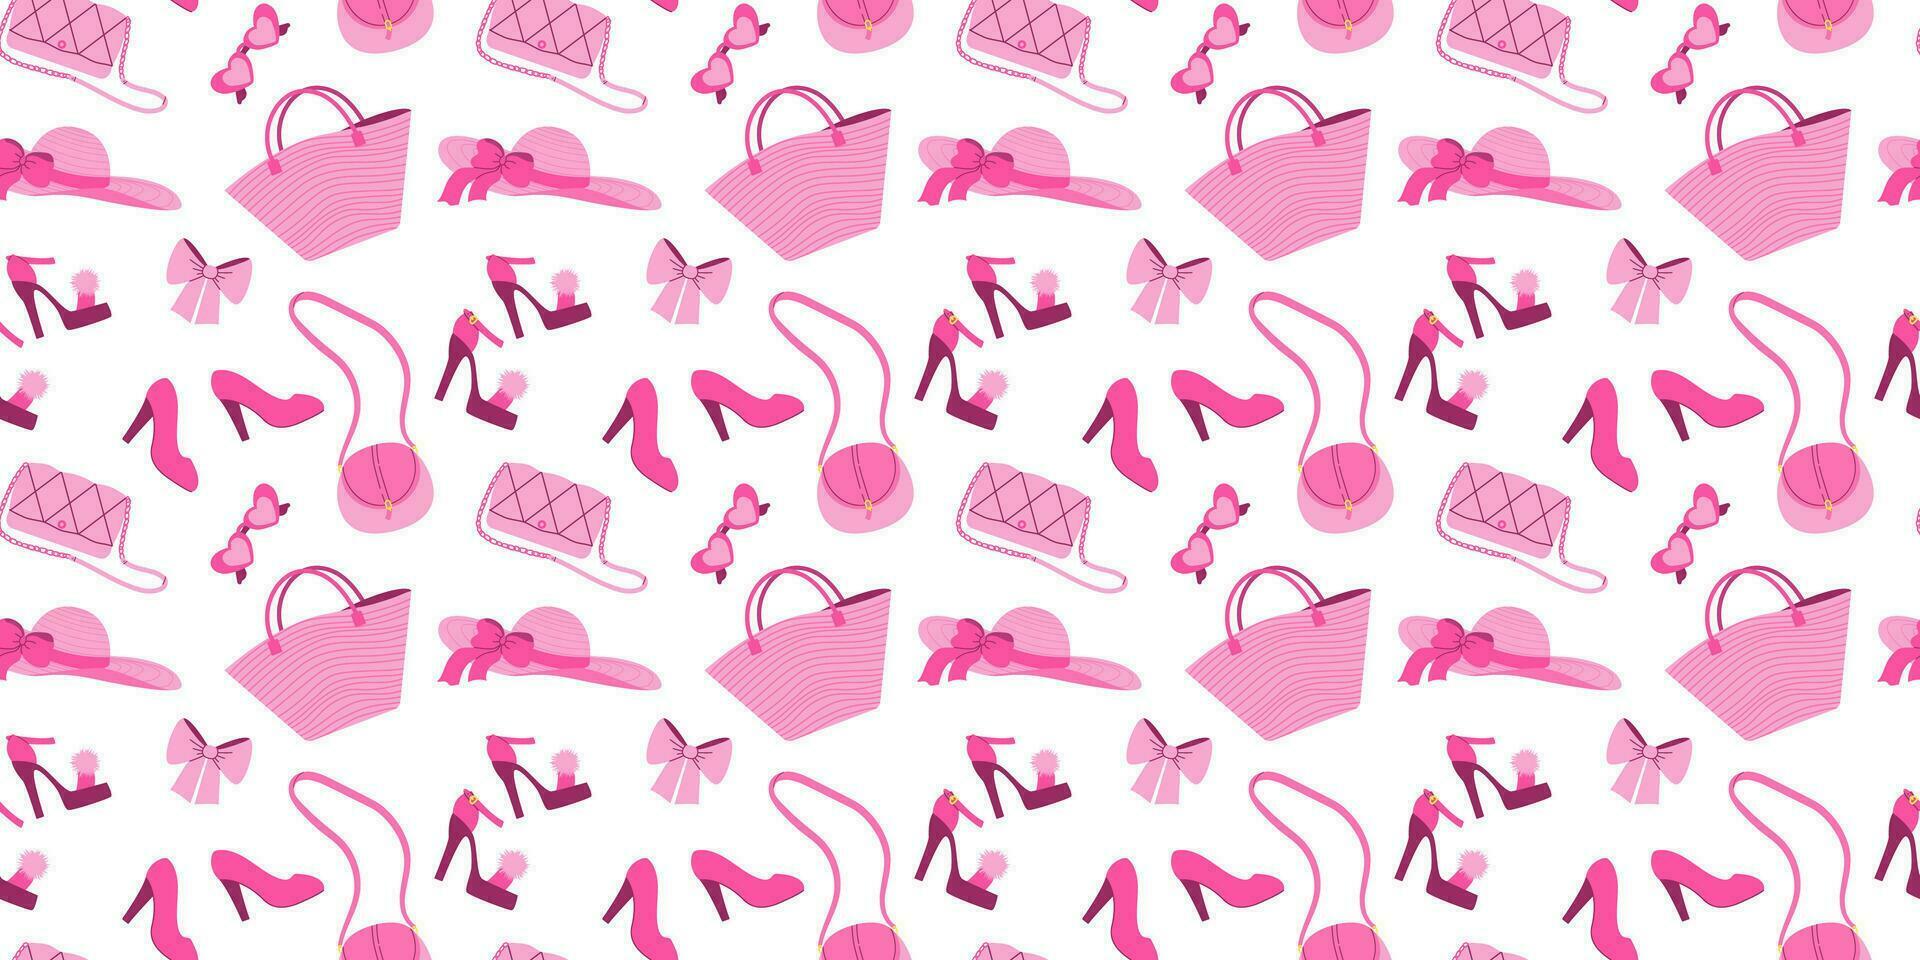 sömlös mönster med glamorös trendig rosa hatt, väska, solglasögon, skor. platt vektor illustration på vit bakgrund. nostalgisk rosa kärna 2000-talet stil samling. valentines dag.